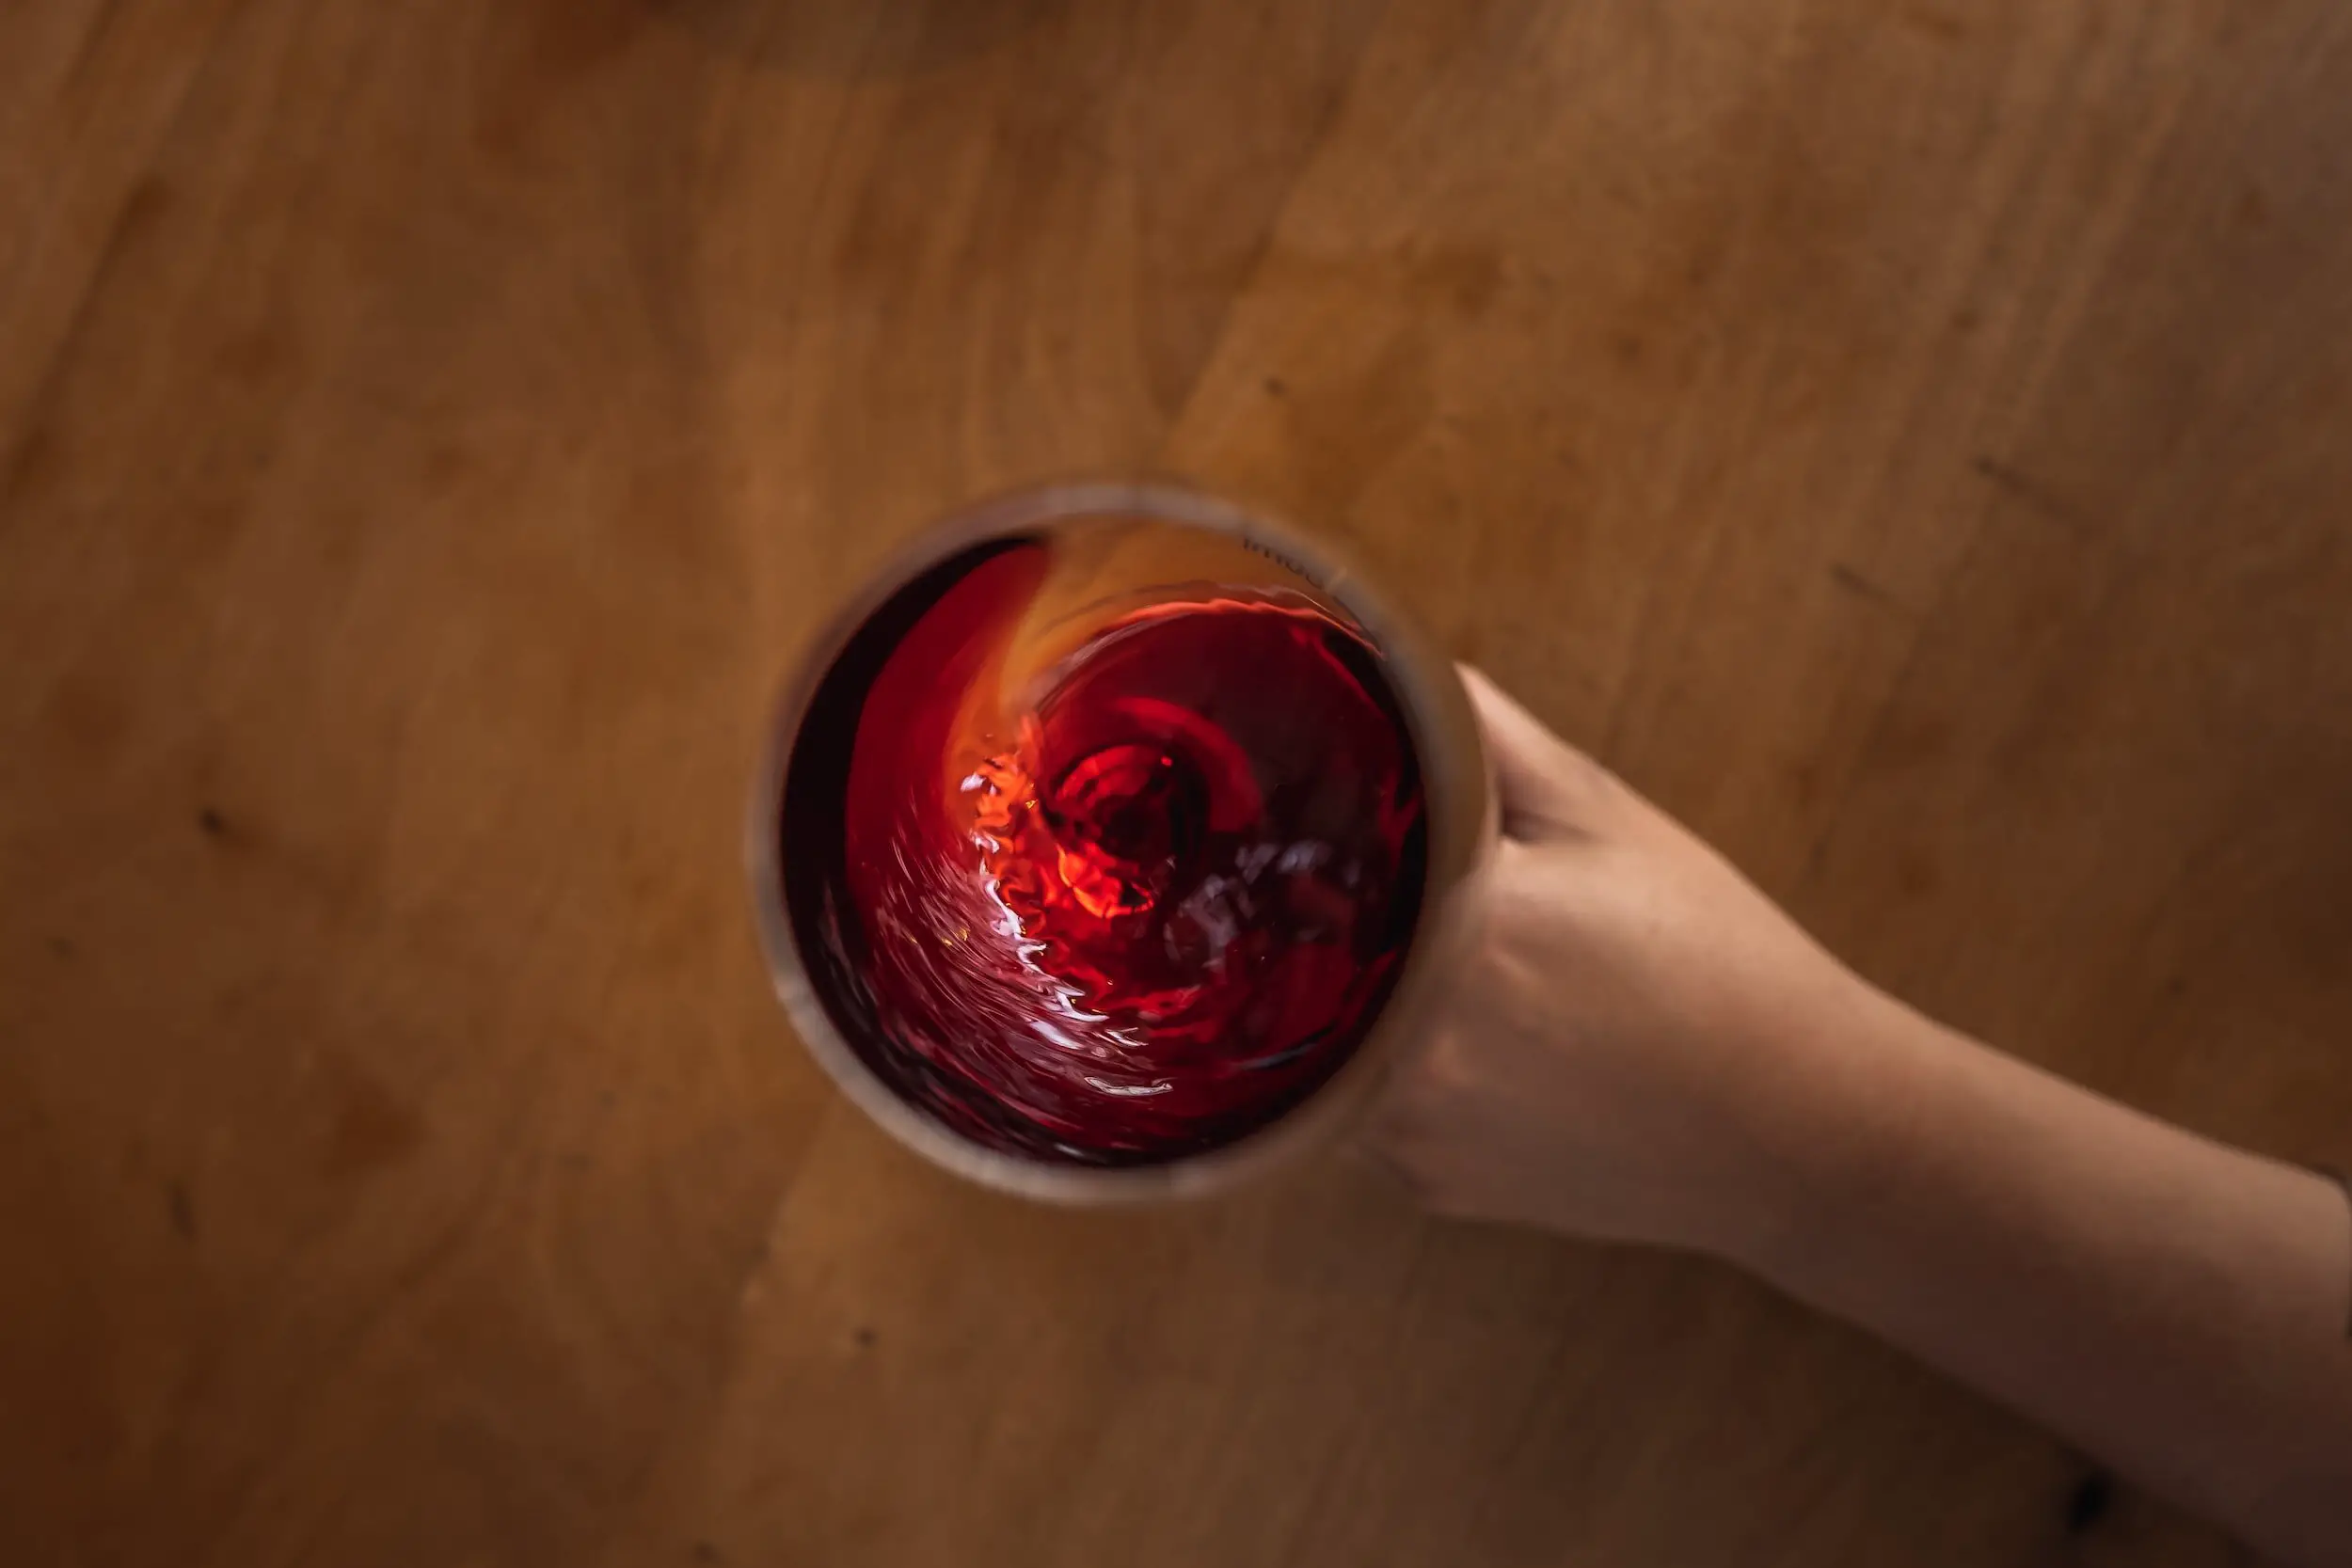 merlot growing regions - swirling glass of wine